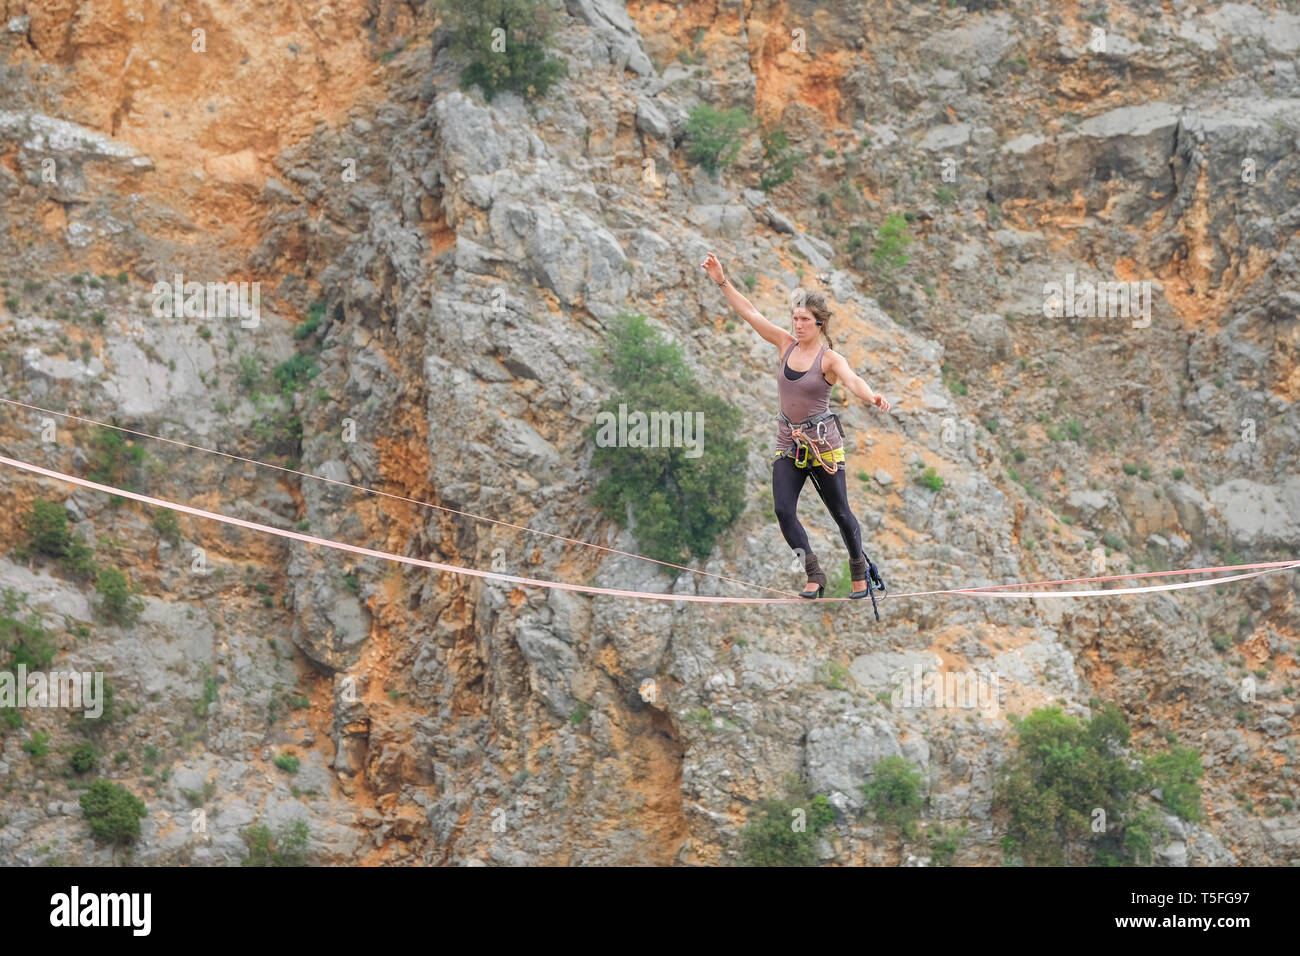 IMOTSKI, CROATIE - Mai 04 : Mimi Guesdon marcher en talons sur le câble aérien au-dessus du lac rouge, Split-dalmatie, Imotski, la Croatie le 04 mai 2018 à Imotski, Croatie. Banque D'Images